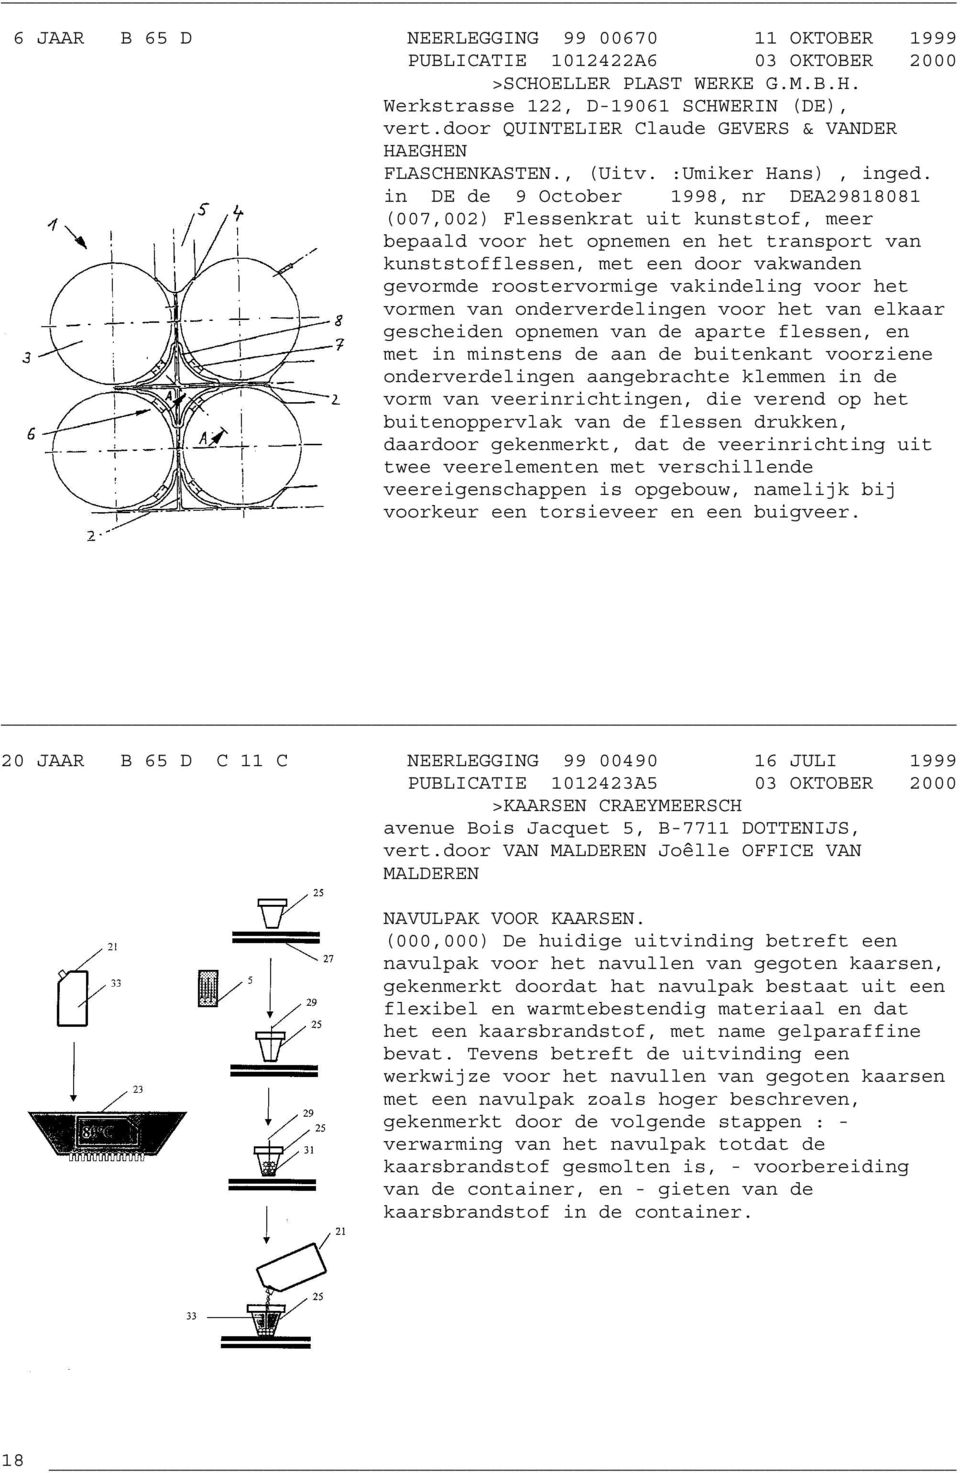 in DE de 9 October 1998, nr DEA29818081 (007,002) Flessenkrat uit kunststof, meer bepaald voor het opnemen en het transport van kunststofflessen, met een door vakwanden gevormde roostervormige